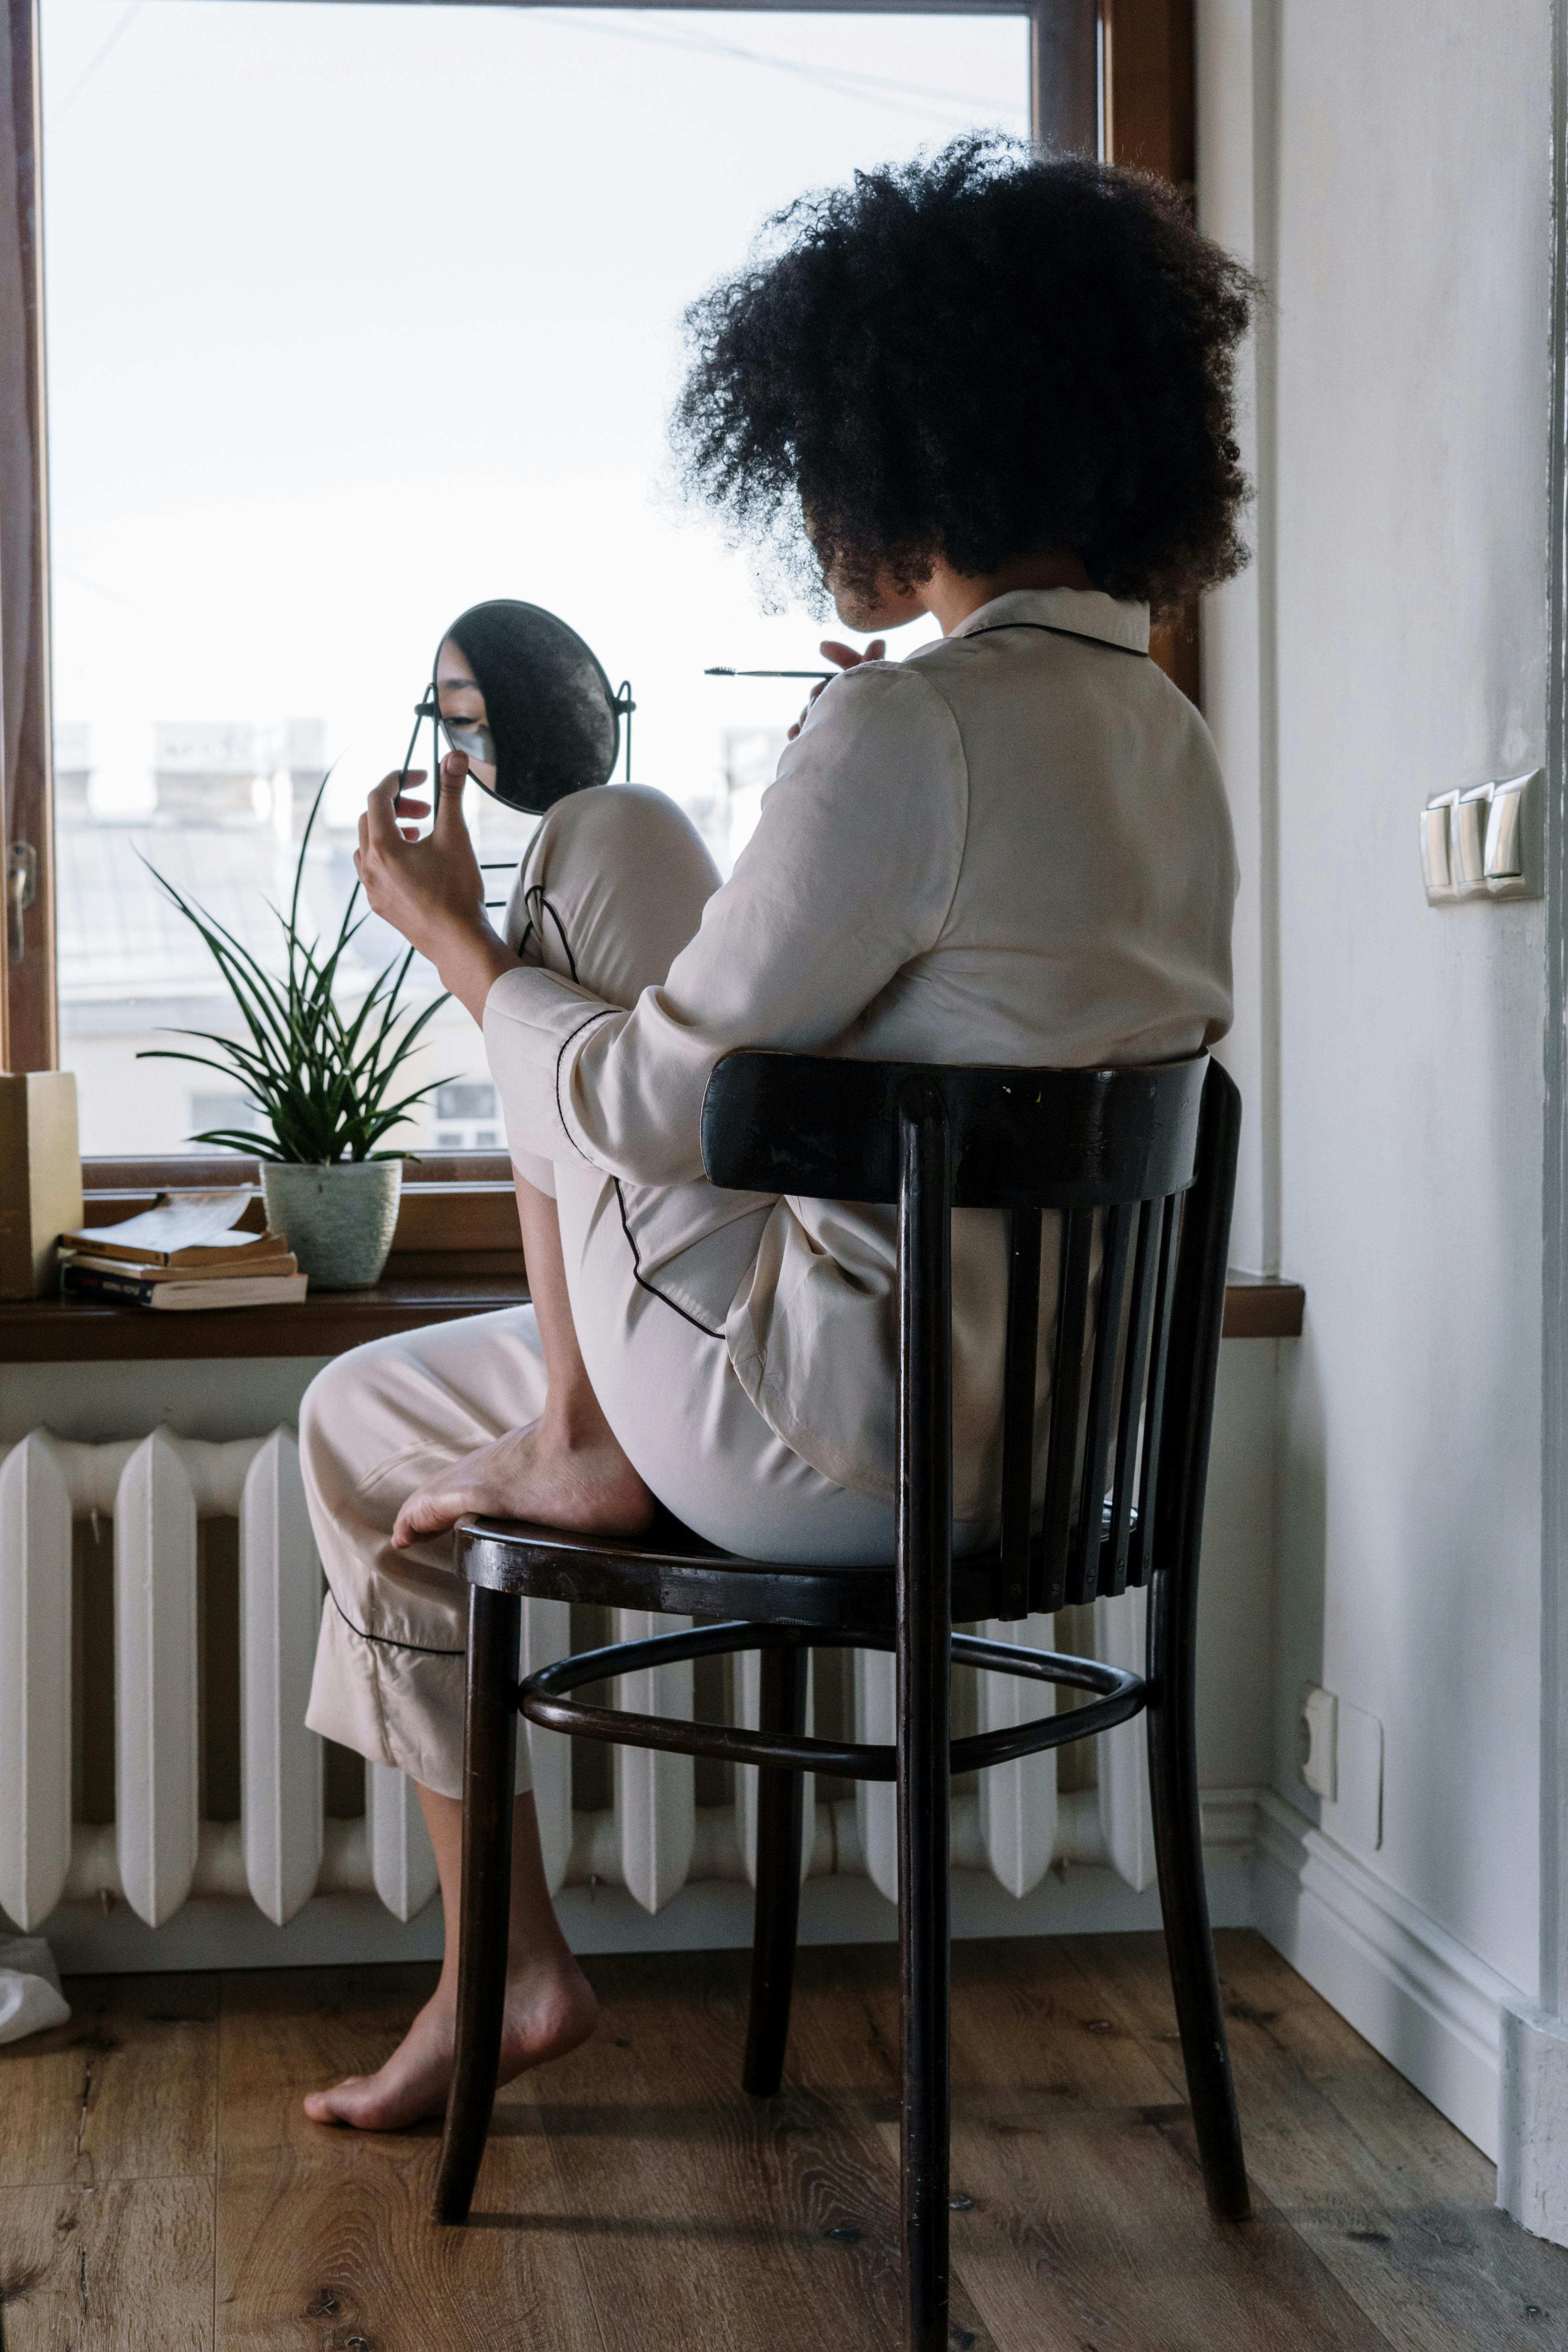 Una mujer en pijama mientras se mira en un espejo | Fuente: Pexels